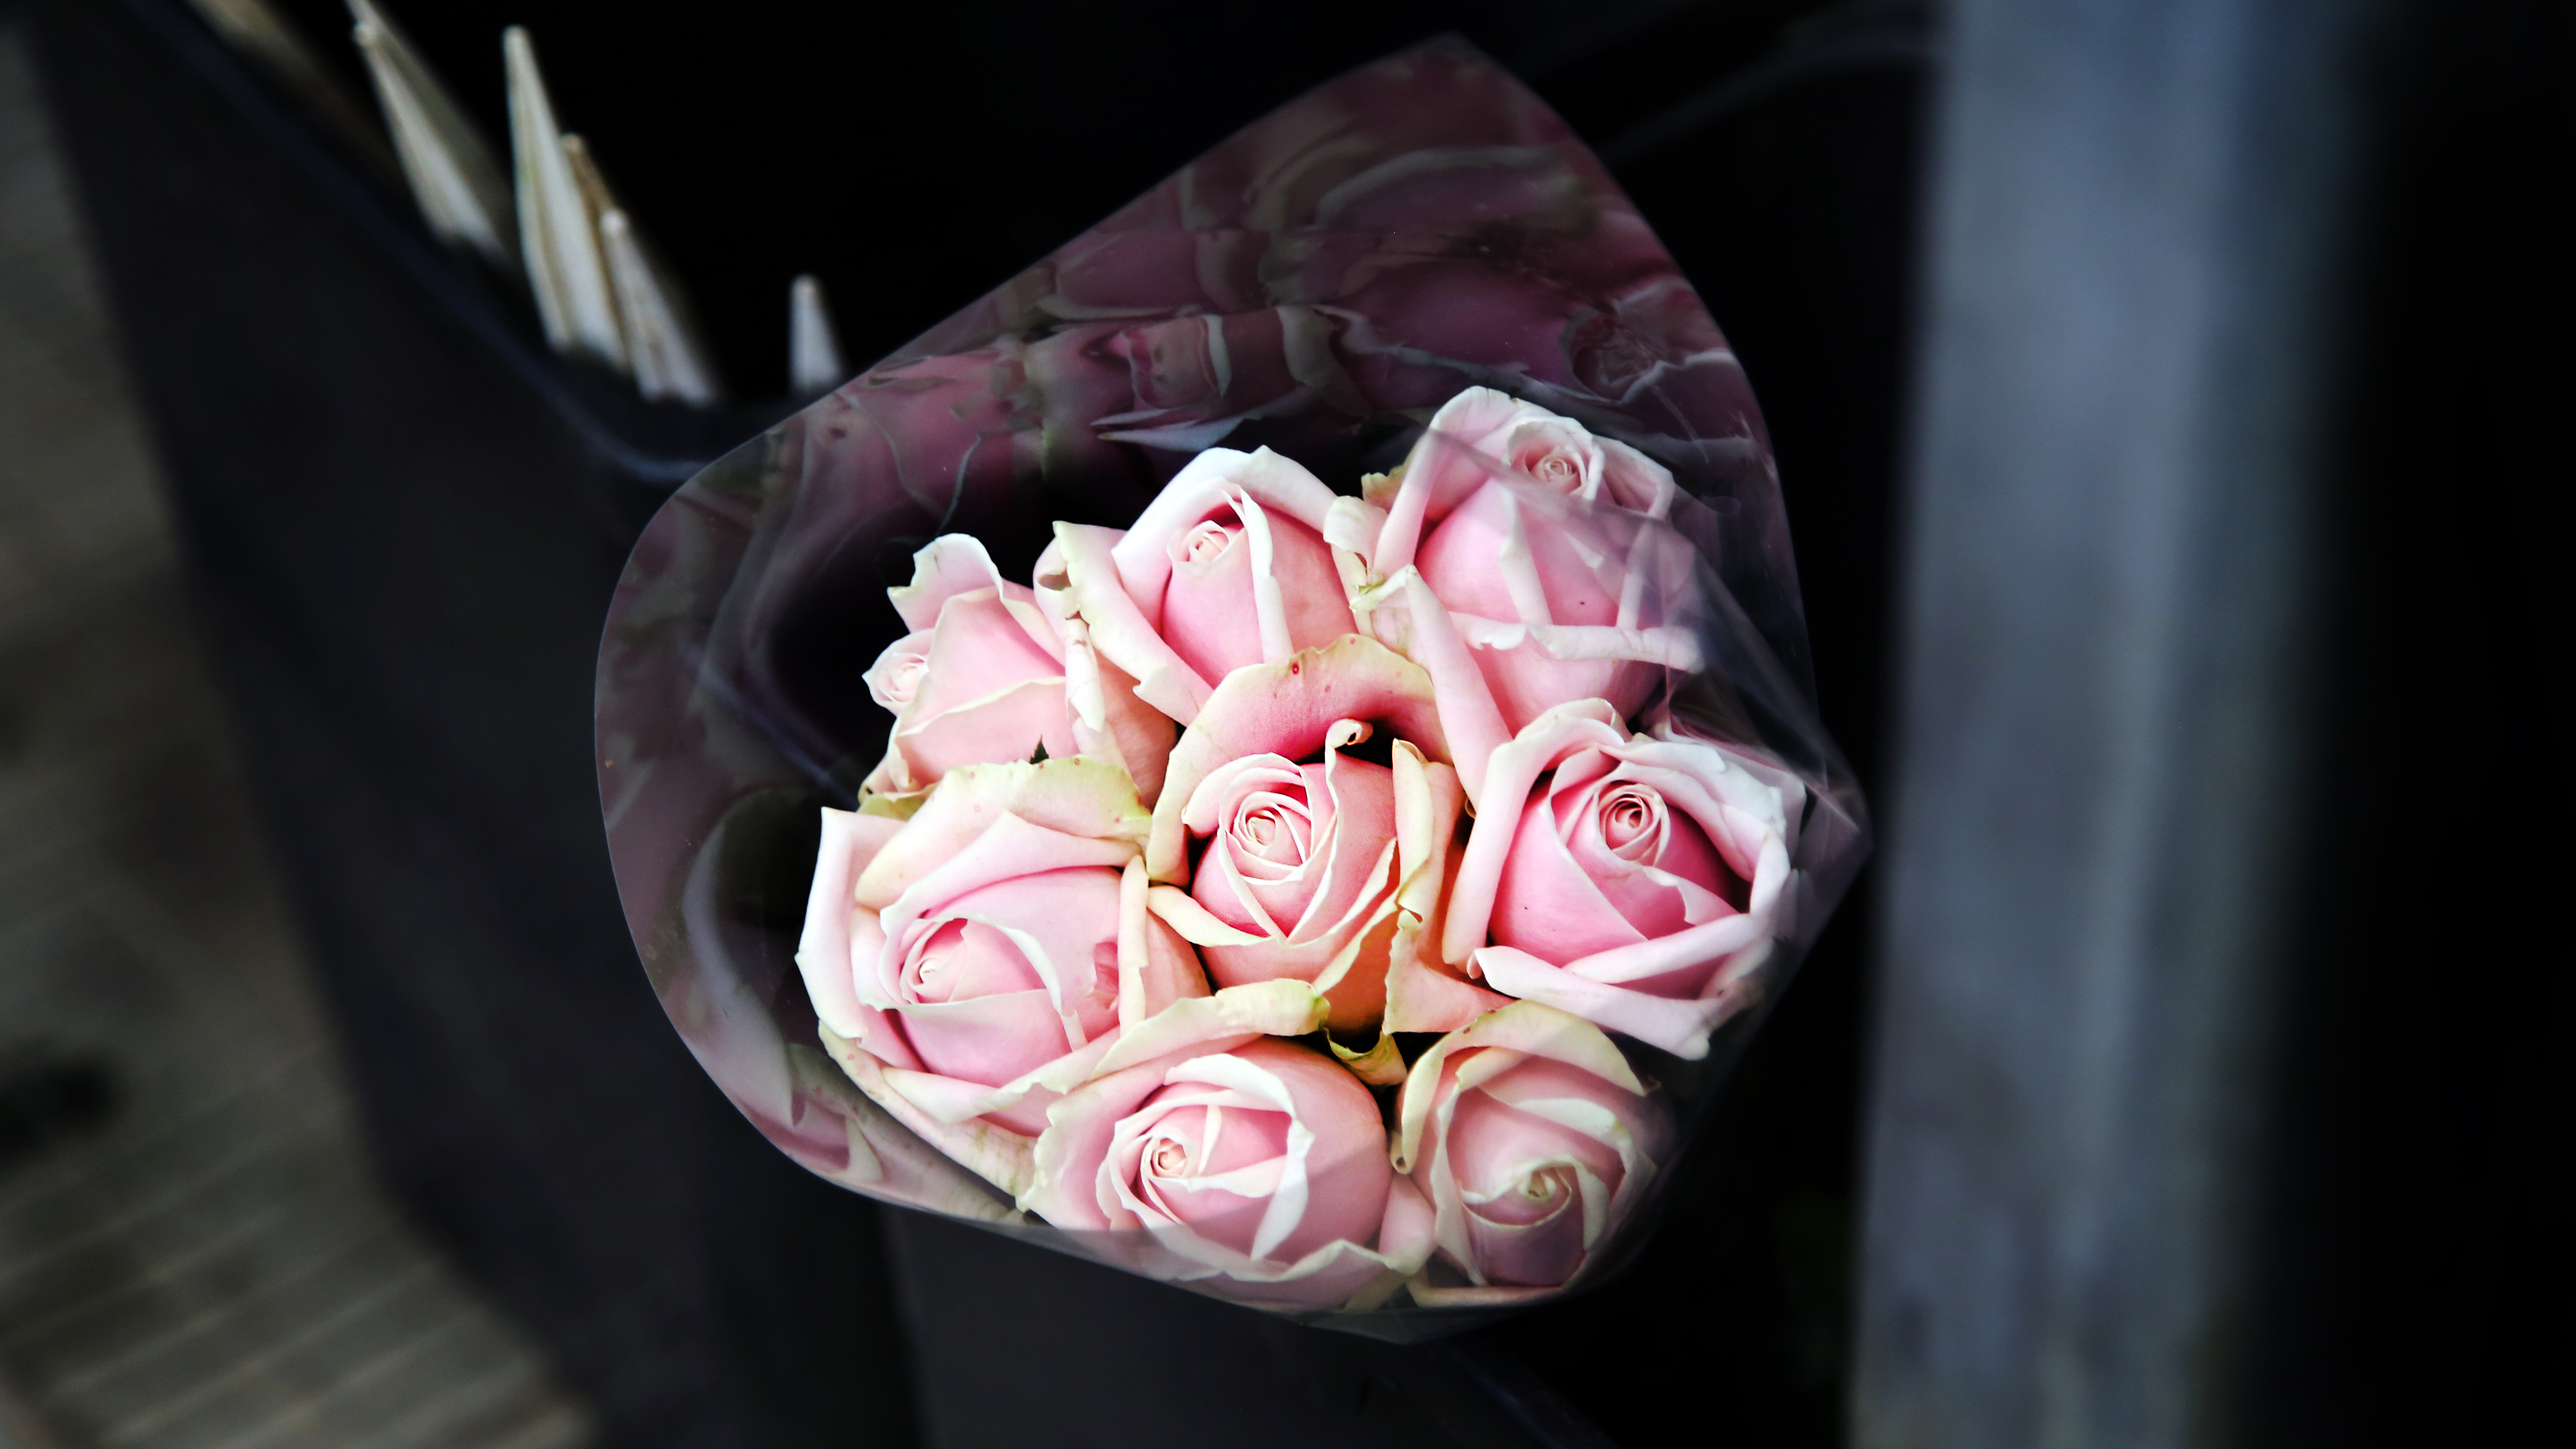 Скачать обои бесплатно Цветы, Розовый, Букет, Розы картинка на рабочий стол ПК